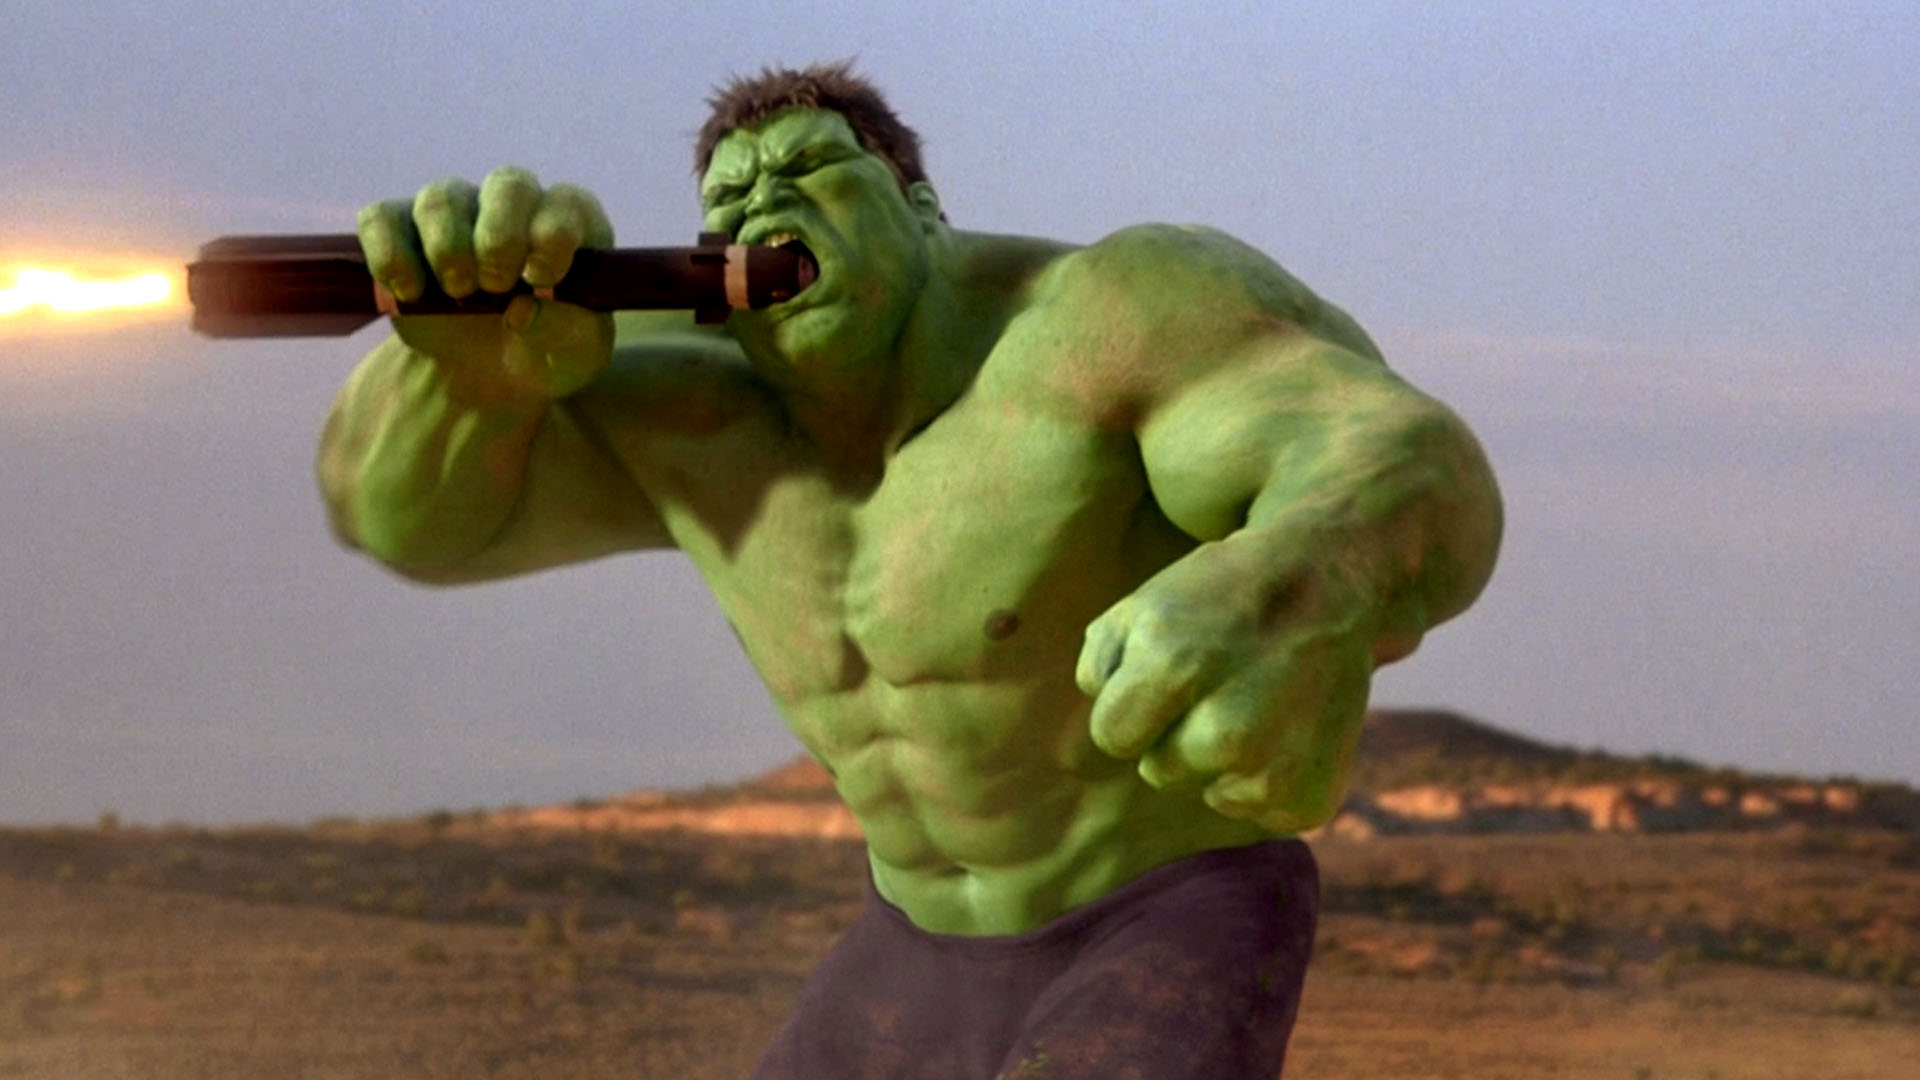 Plastusiowy Hulk, czyli co ma do zaoferowania film Anga Lee po latach